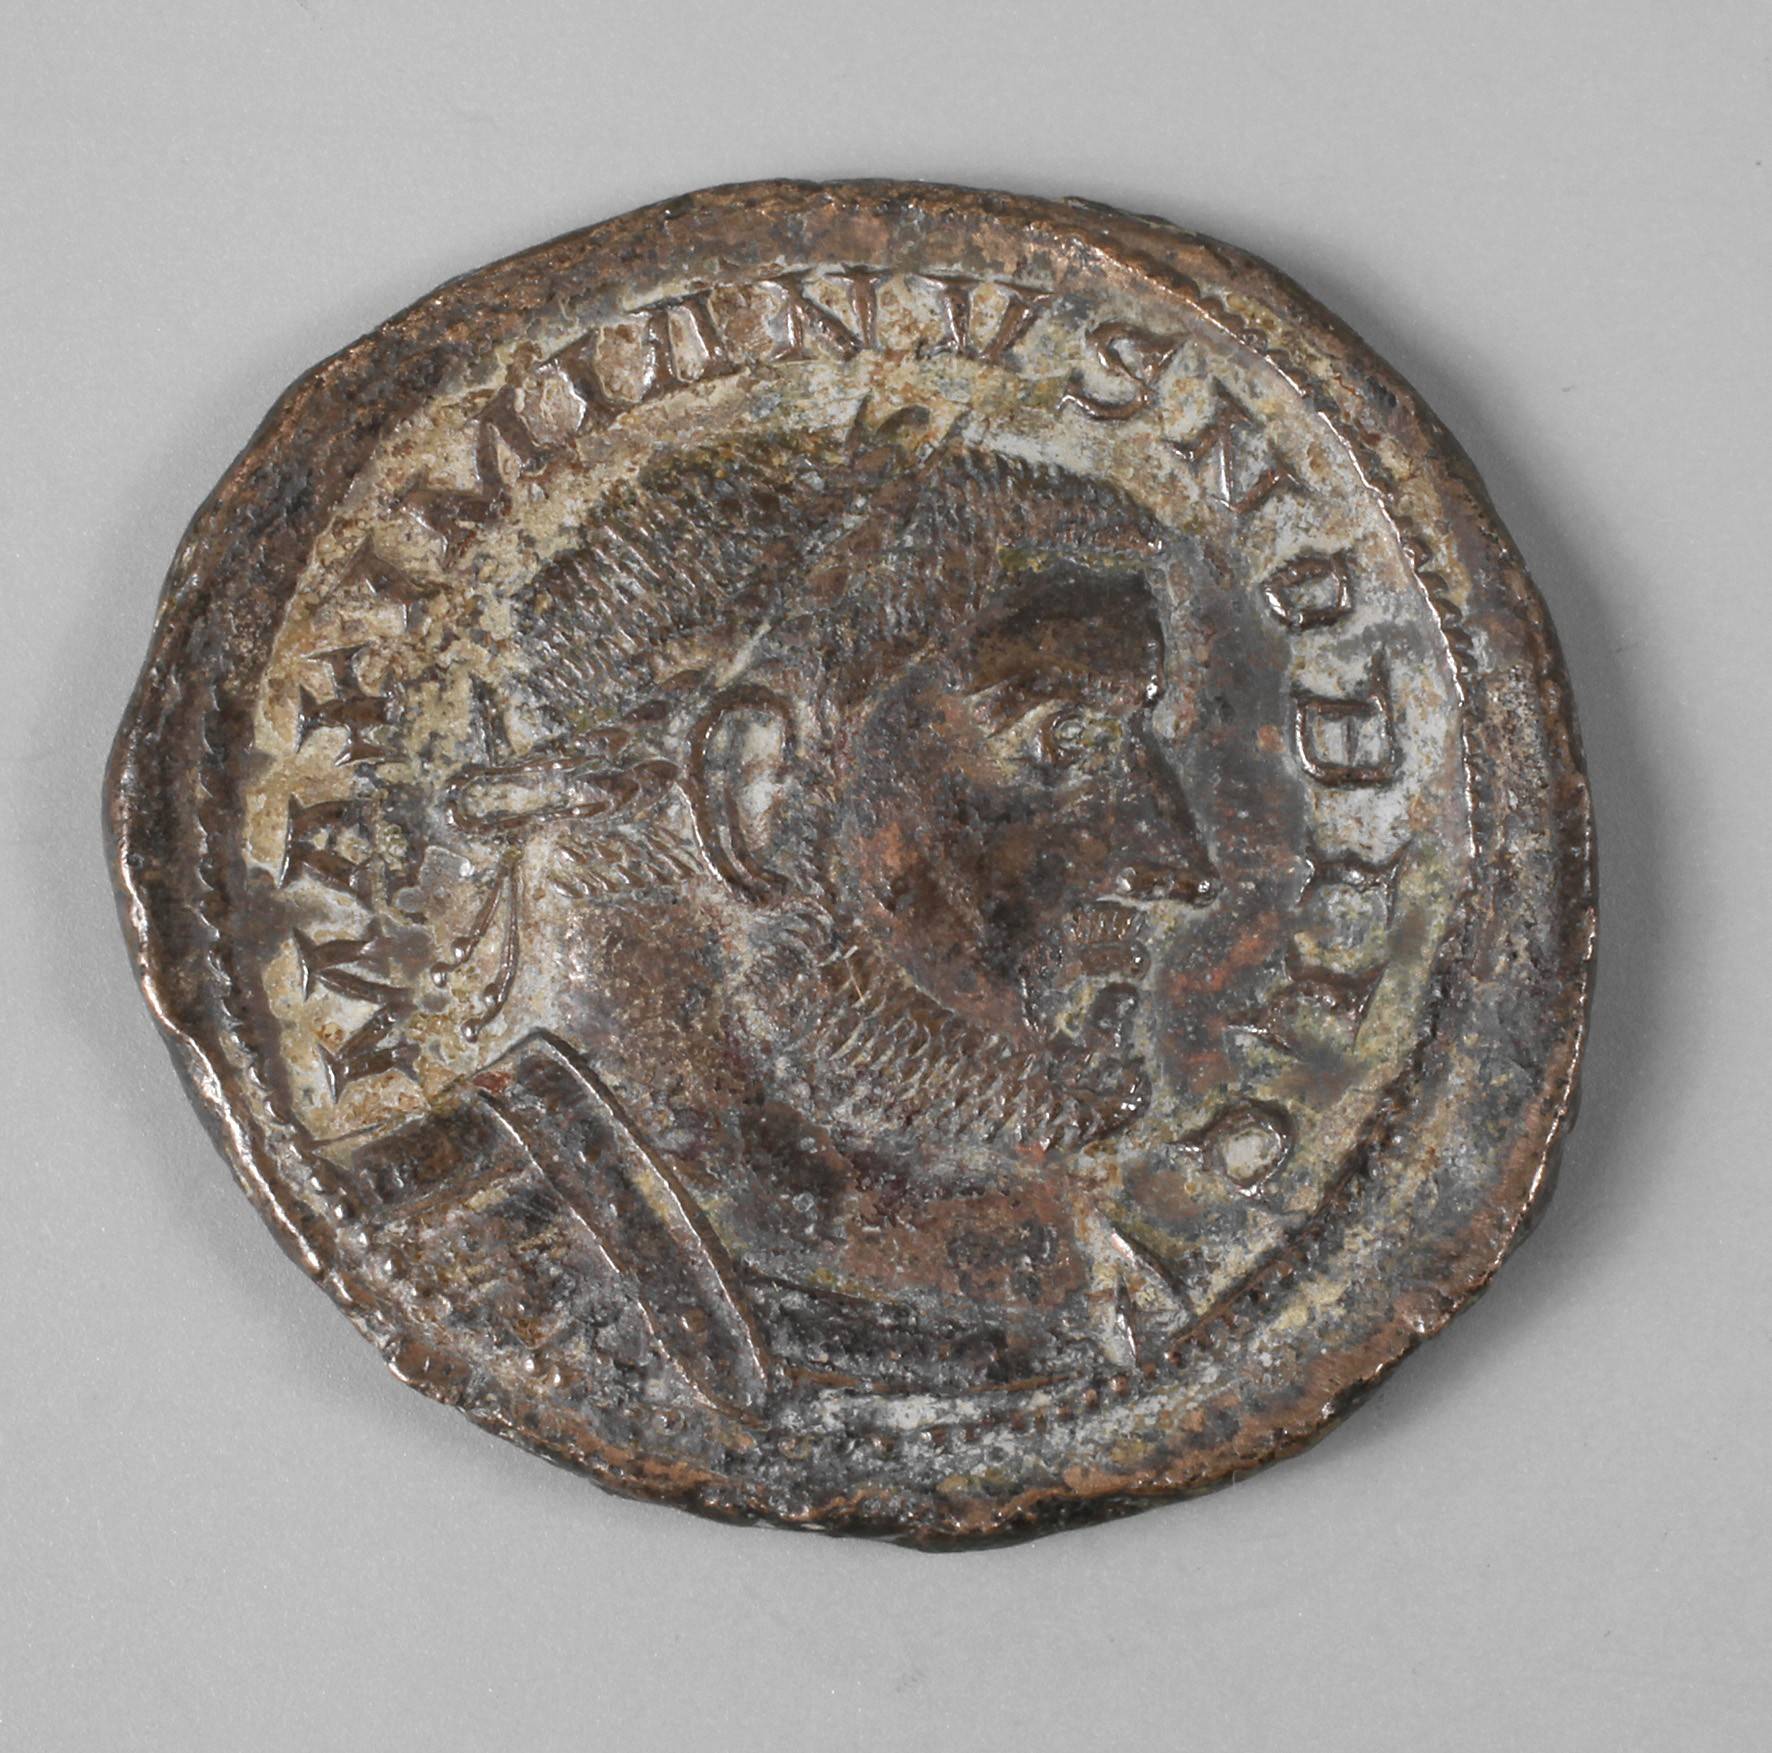 Galerius Maximianus als Caesar